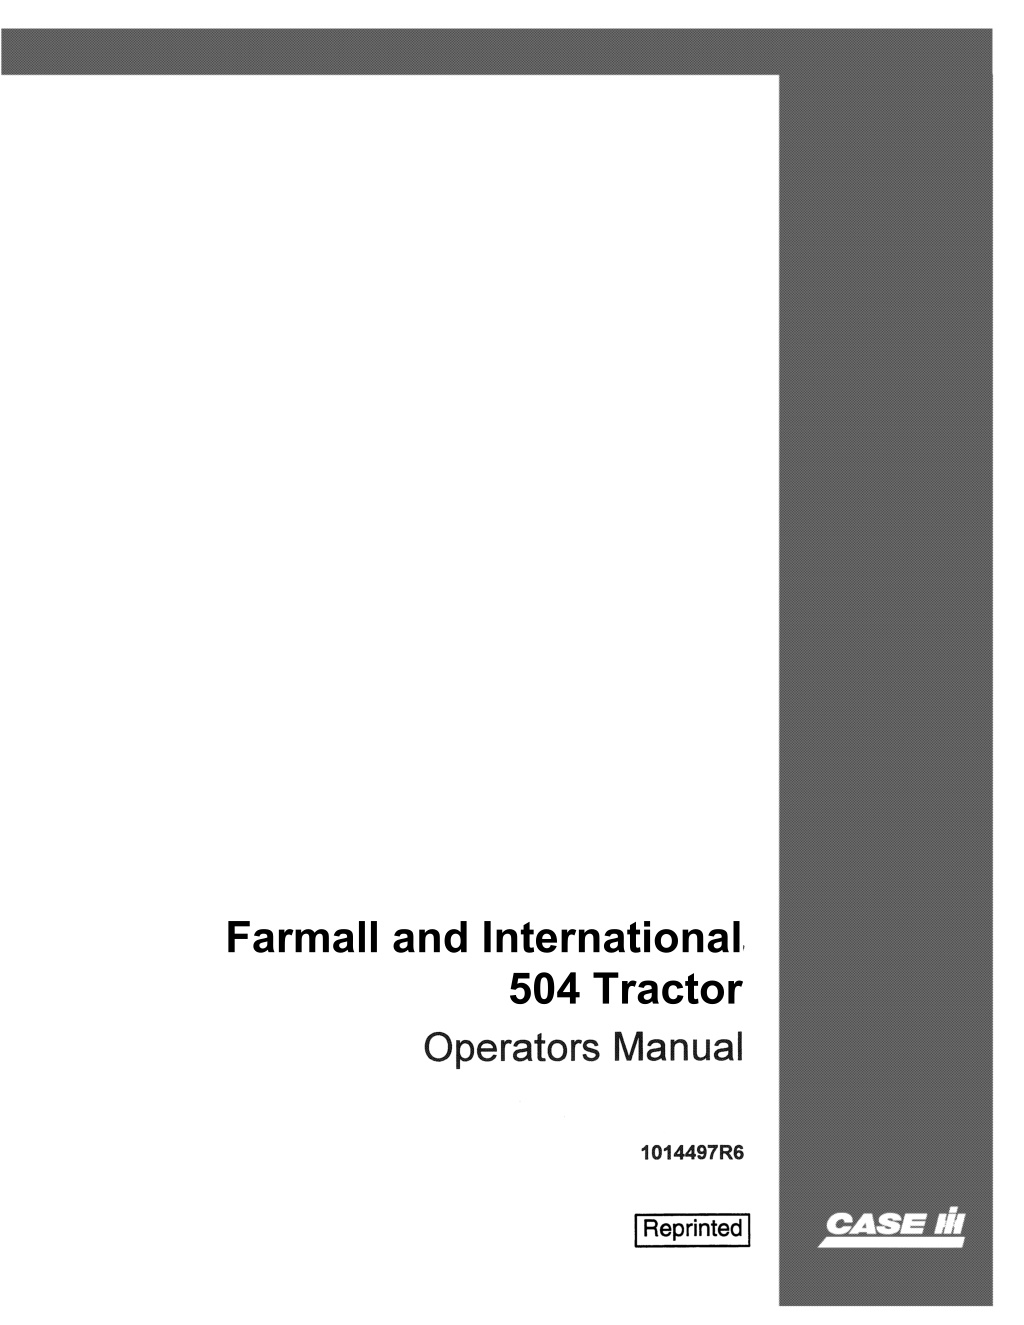 farmall and international l.w